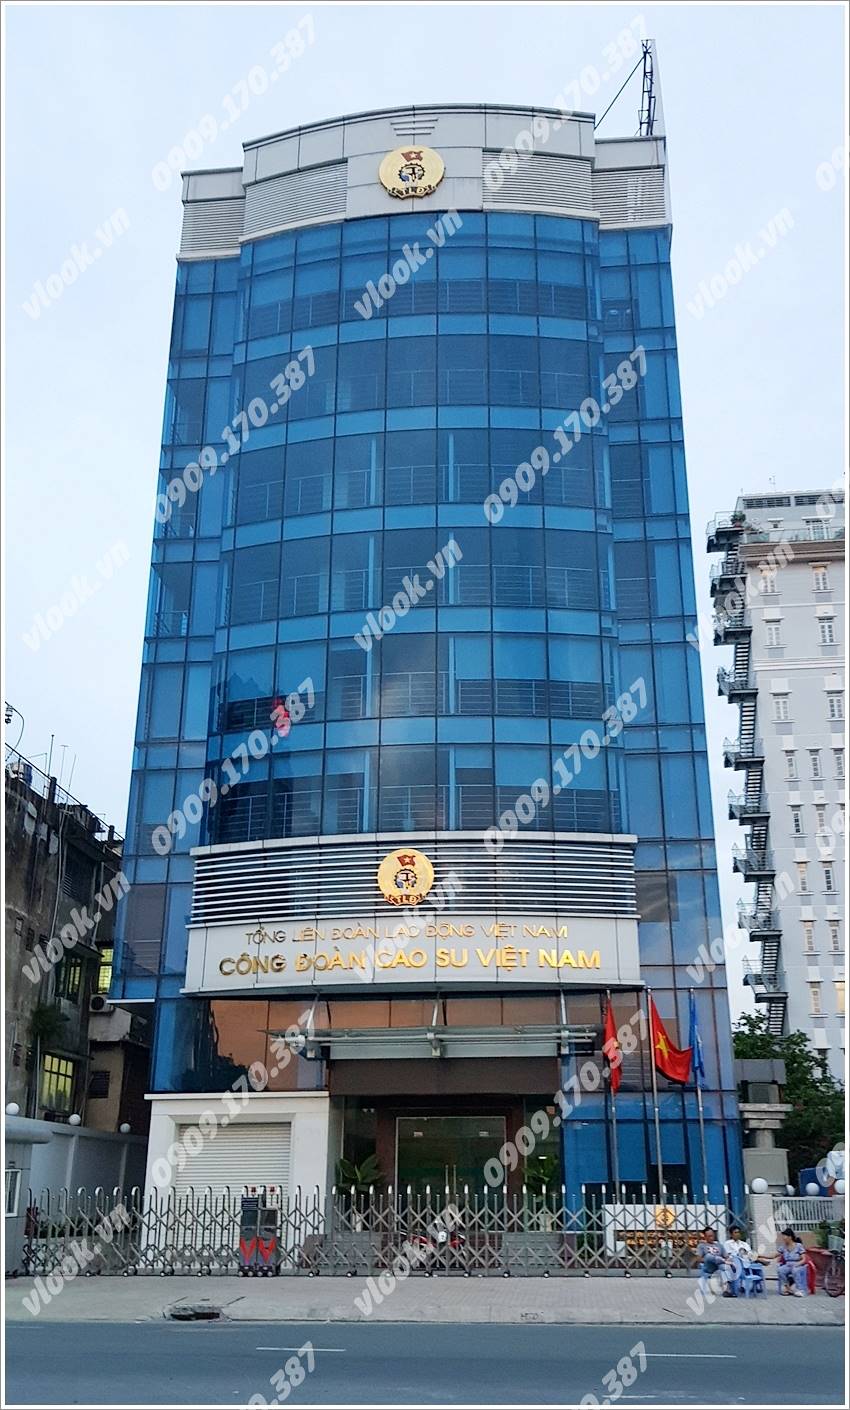 Cao ốc cho thuê văn phòng Cao Su Việt Nam Building, Quận Phú Nhuận, TPHCM - vlook.vn